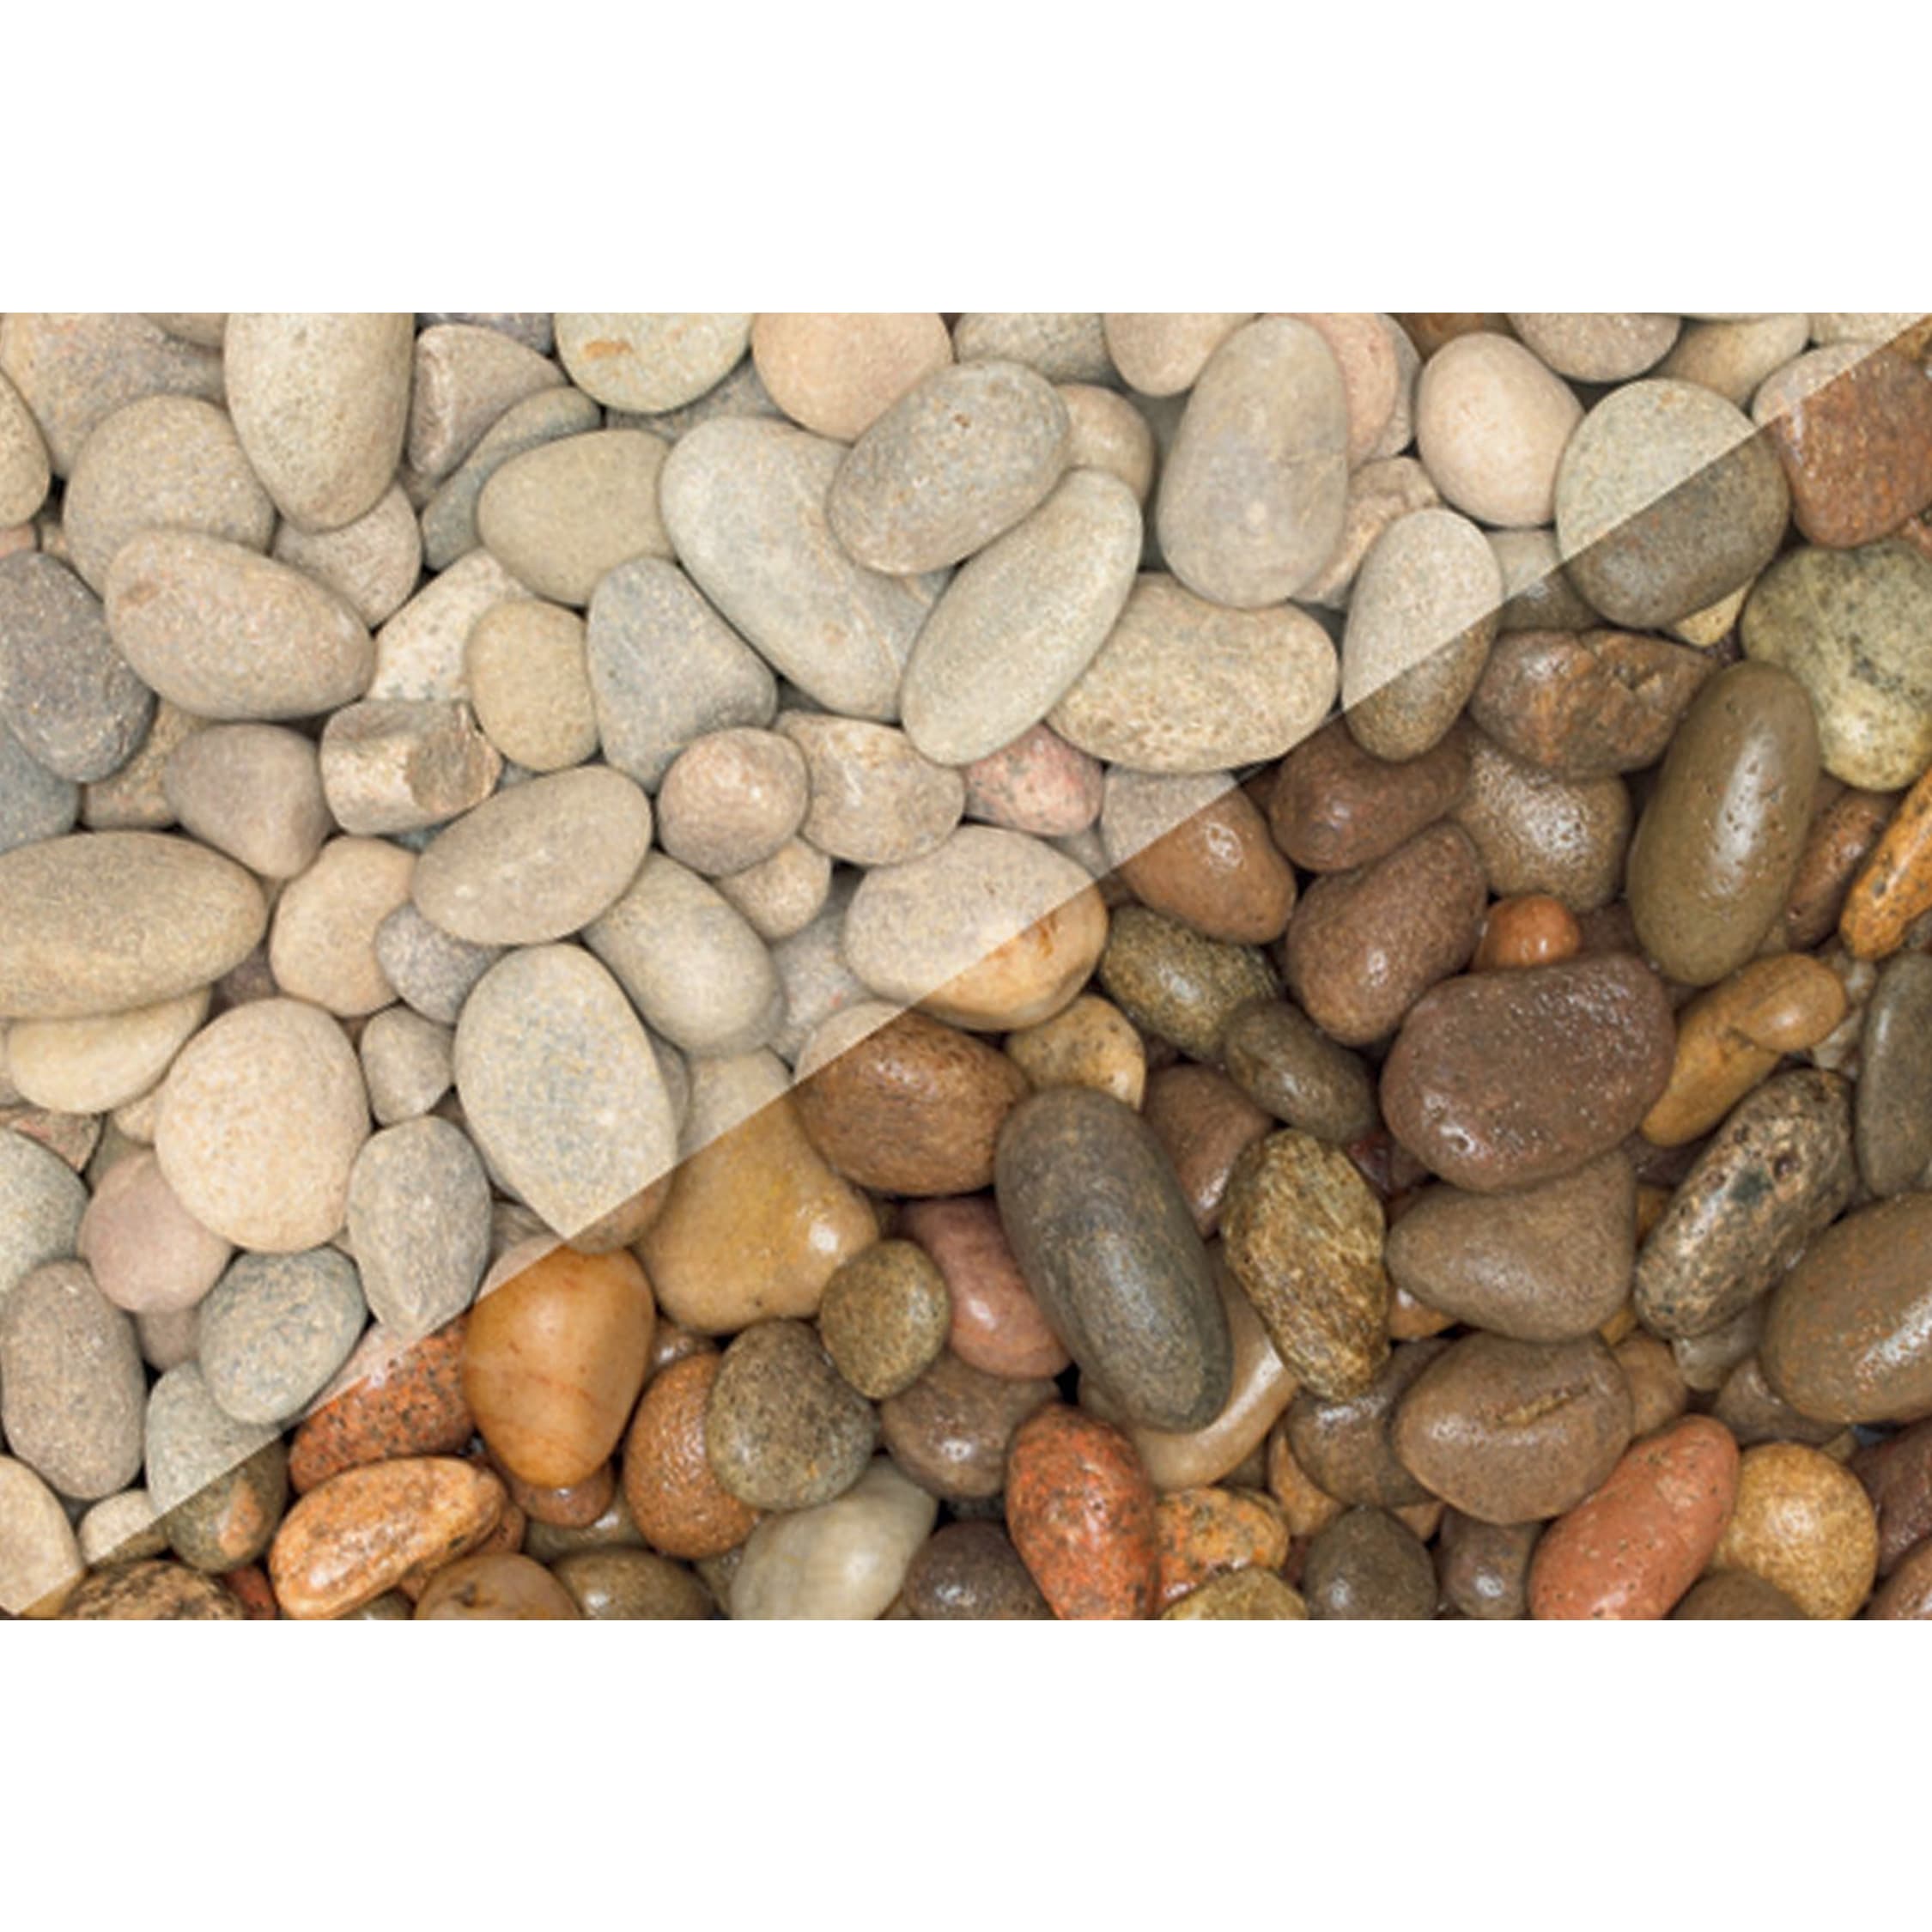 Natural Decorative Gravel Pebbles 0.3-0.4 On Deals, 53% OFF | sojade ...